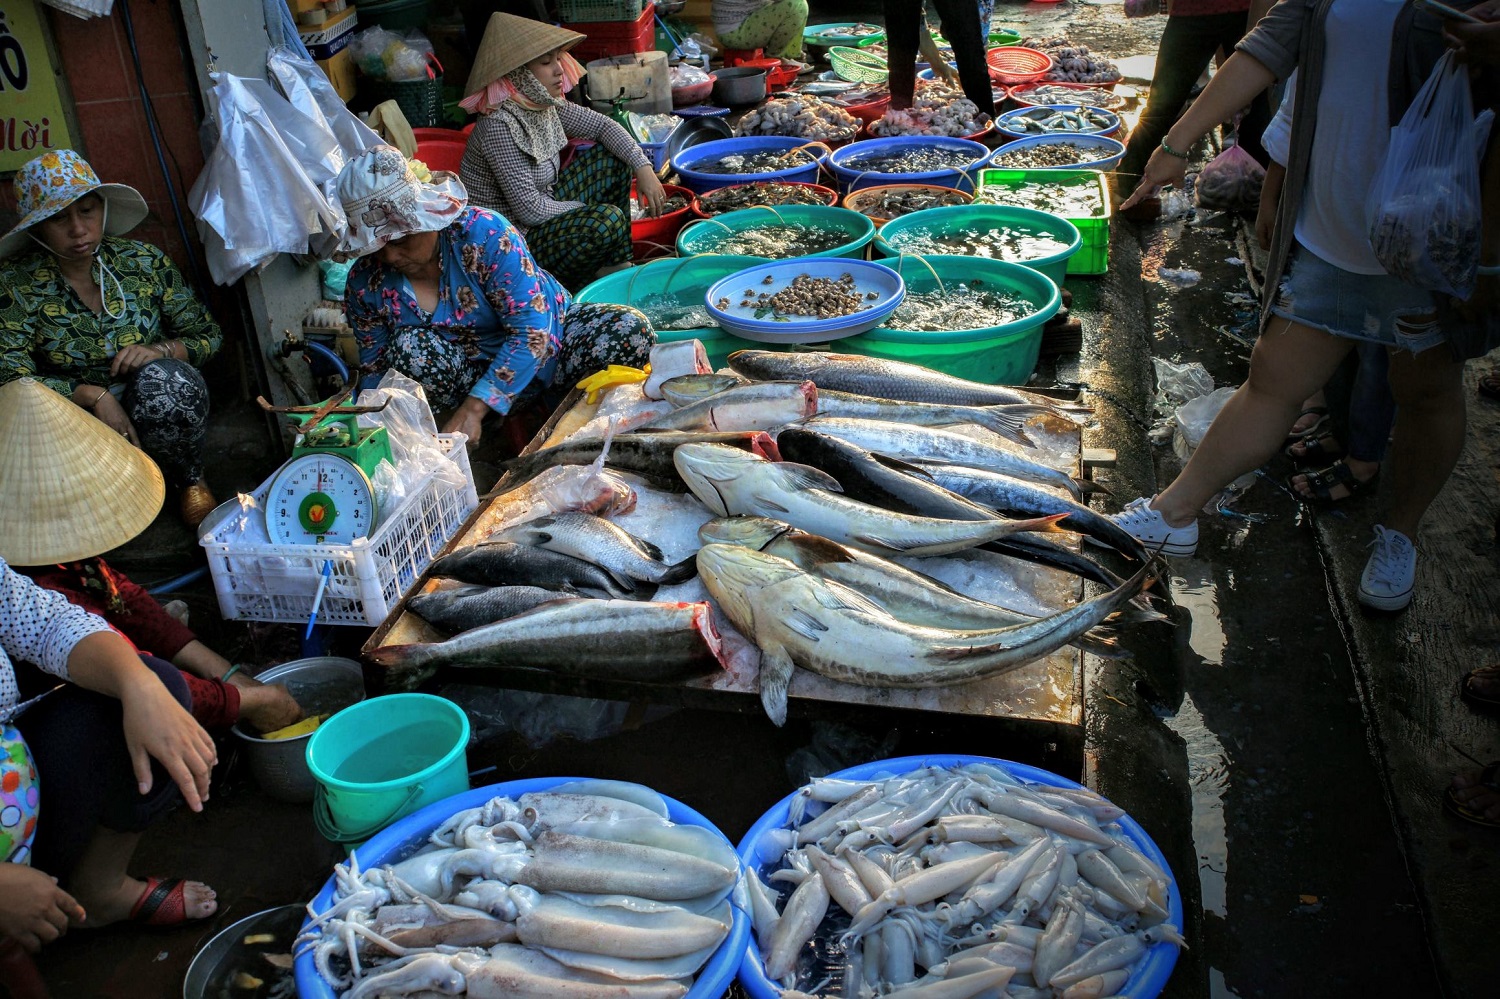 Quy trình thu mua và bán hải sản tại chợ xóm Lưới Vũng Tàu như thế nào?
